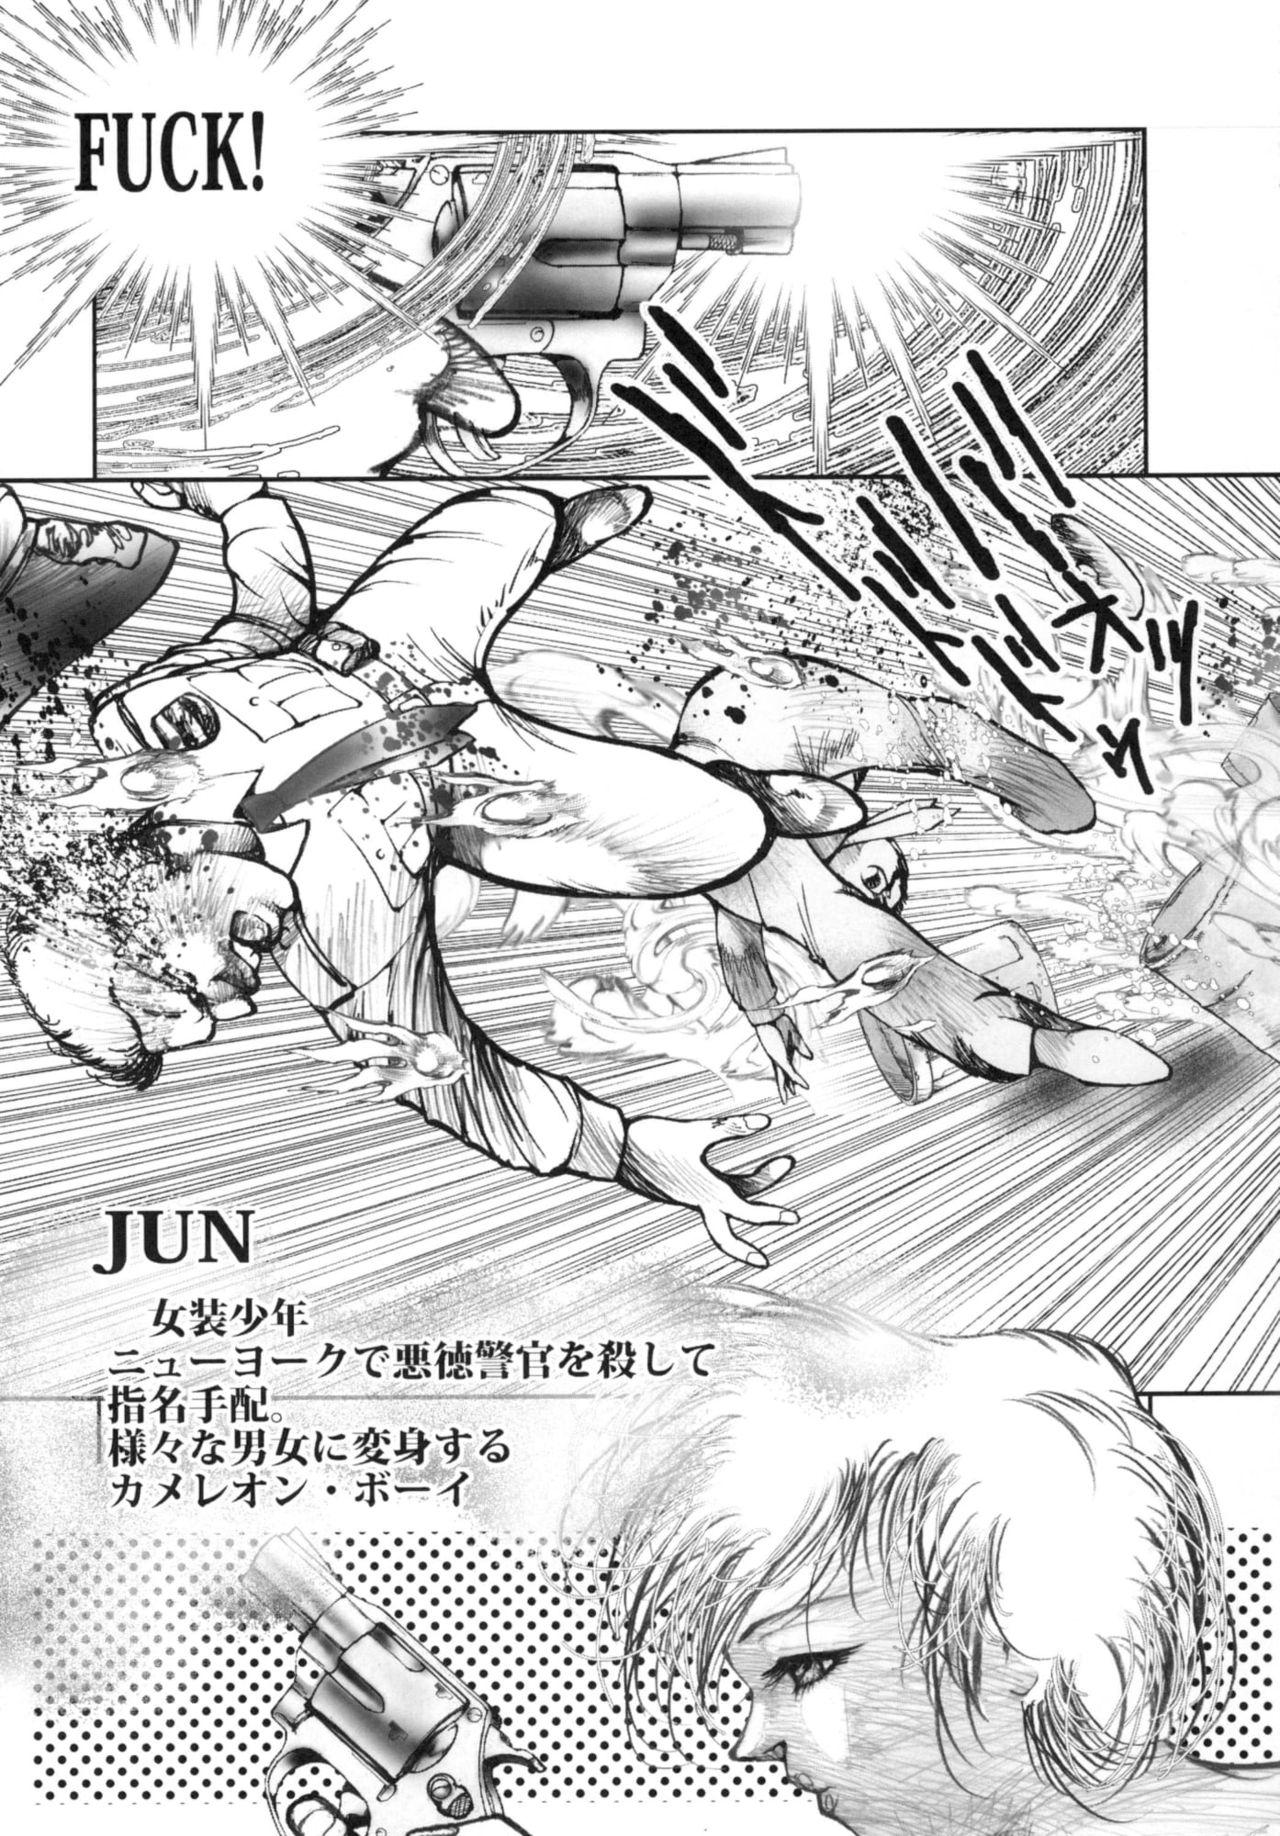 Russian Chain Heat - Original Himitsu no akko-chan Majokko megu-chan Sharing - Page 5